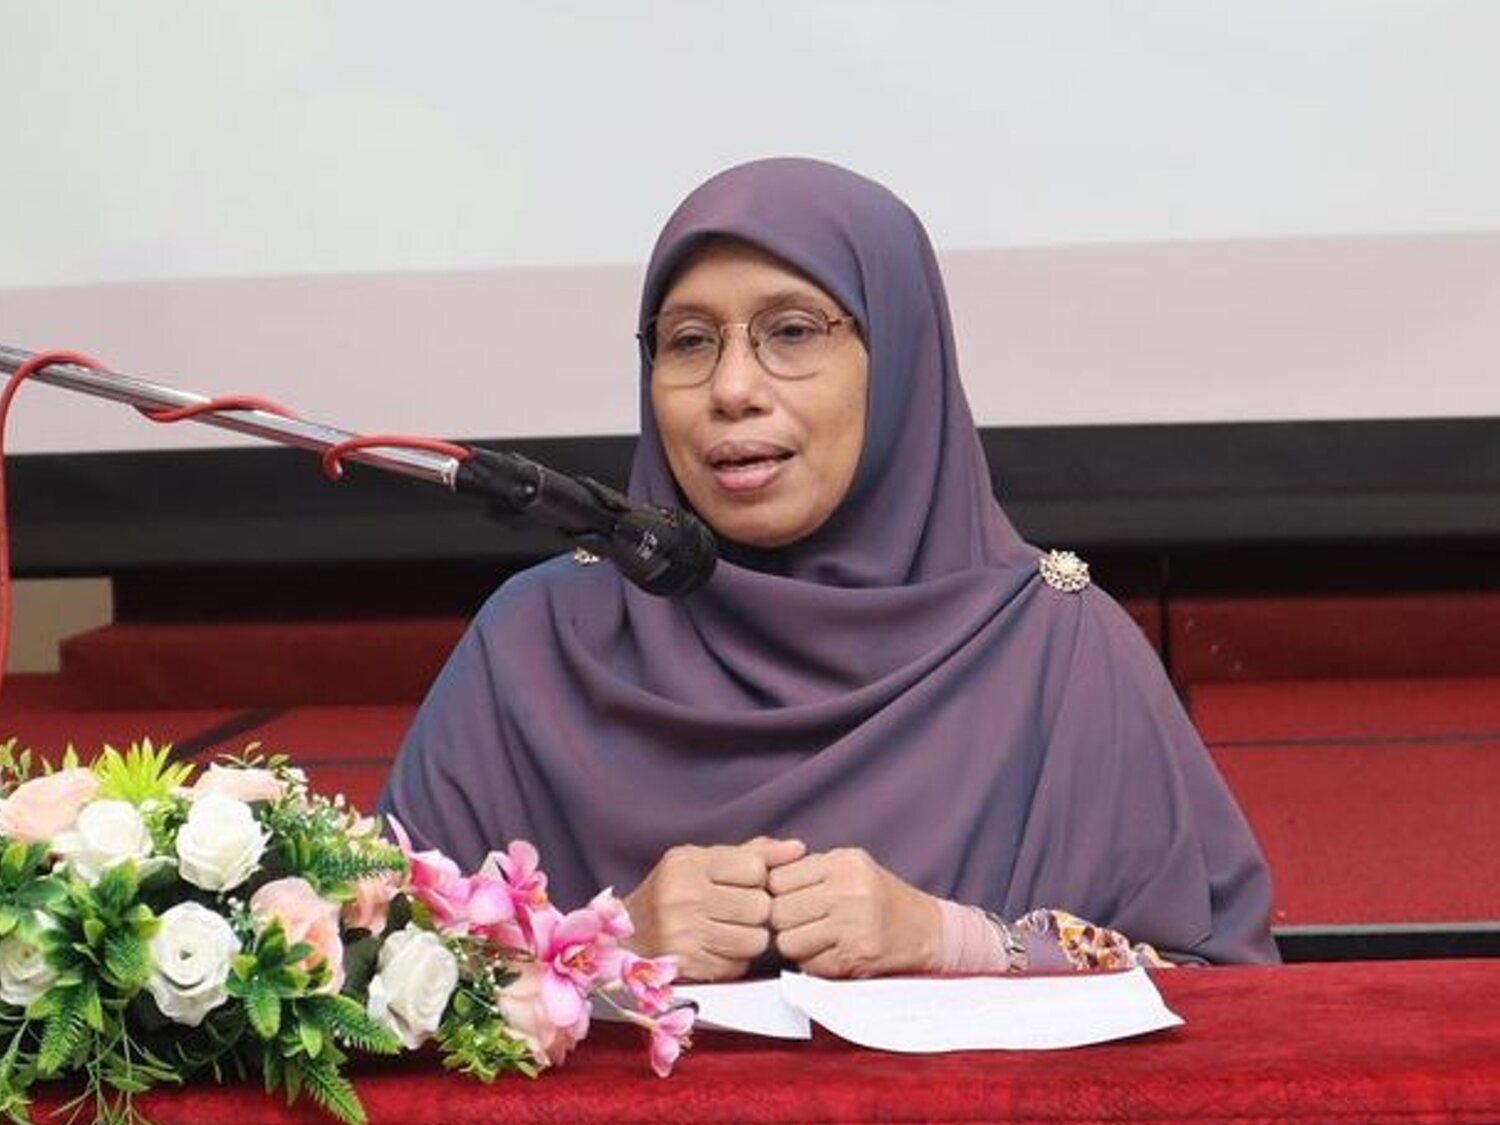 La viceministra de la Mujer de Malasia pide "golpear suavemente" a las "esposas tercas" para "mostrar cuánto las quieren"